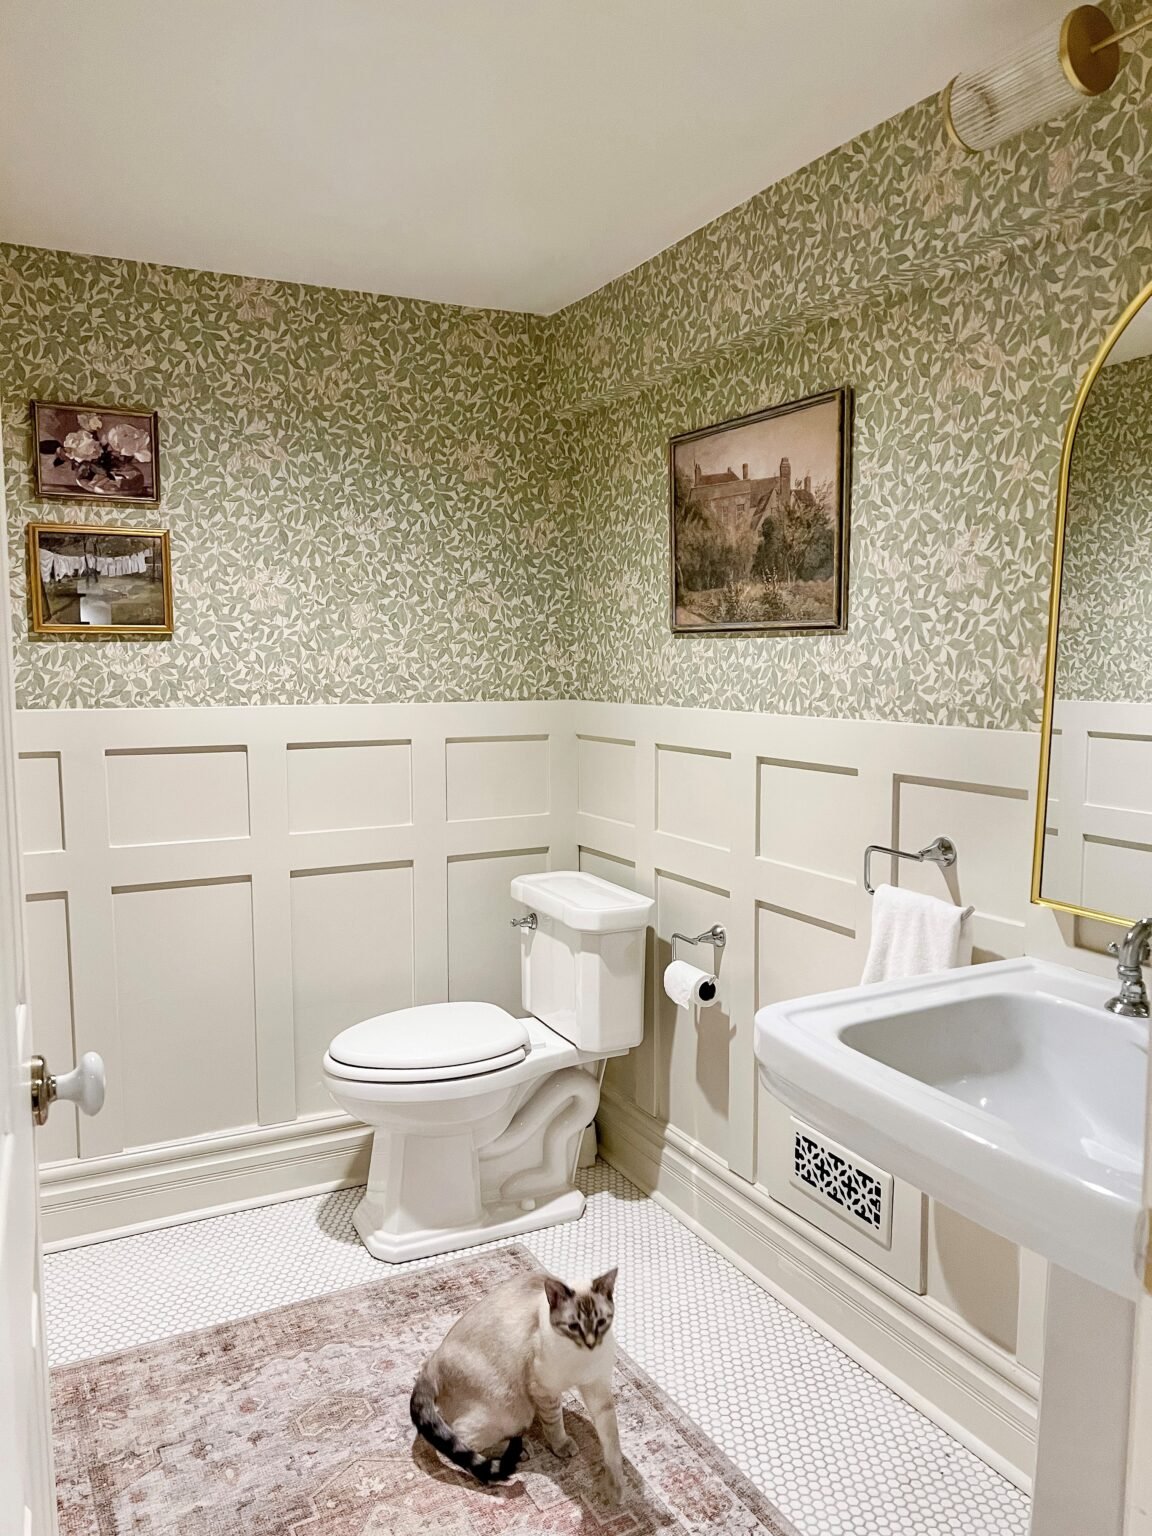 浴室贴着墙纸，墙底有木板和木条，用本杰明·摩尔(Benjamin Moore)的天然奶油绘制。